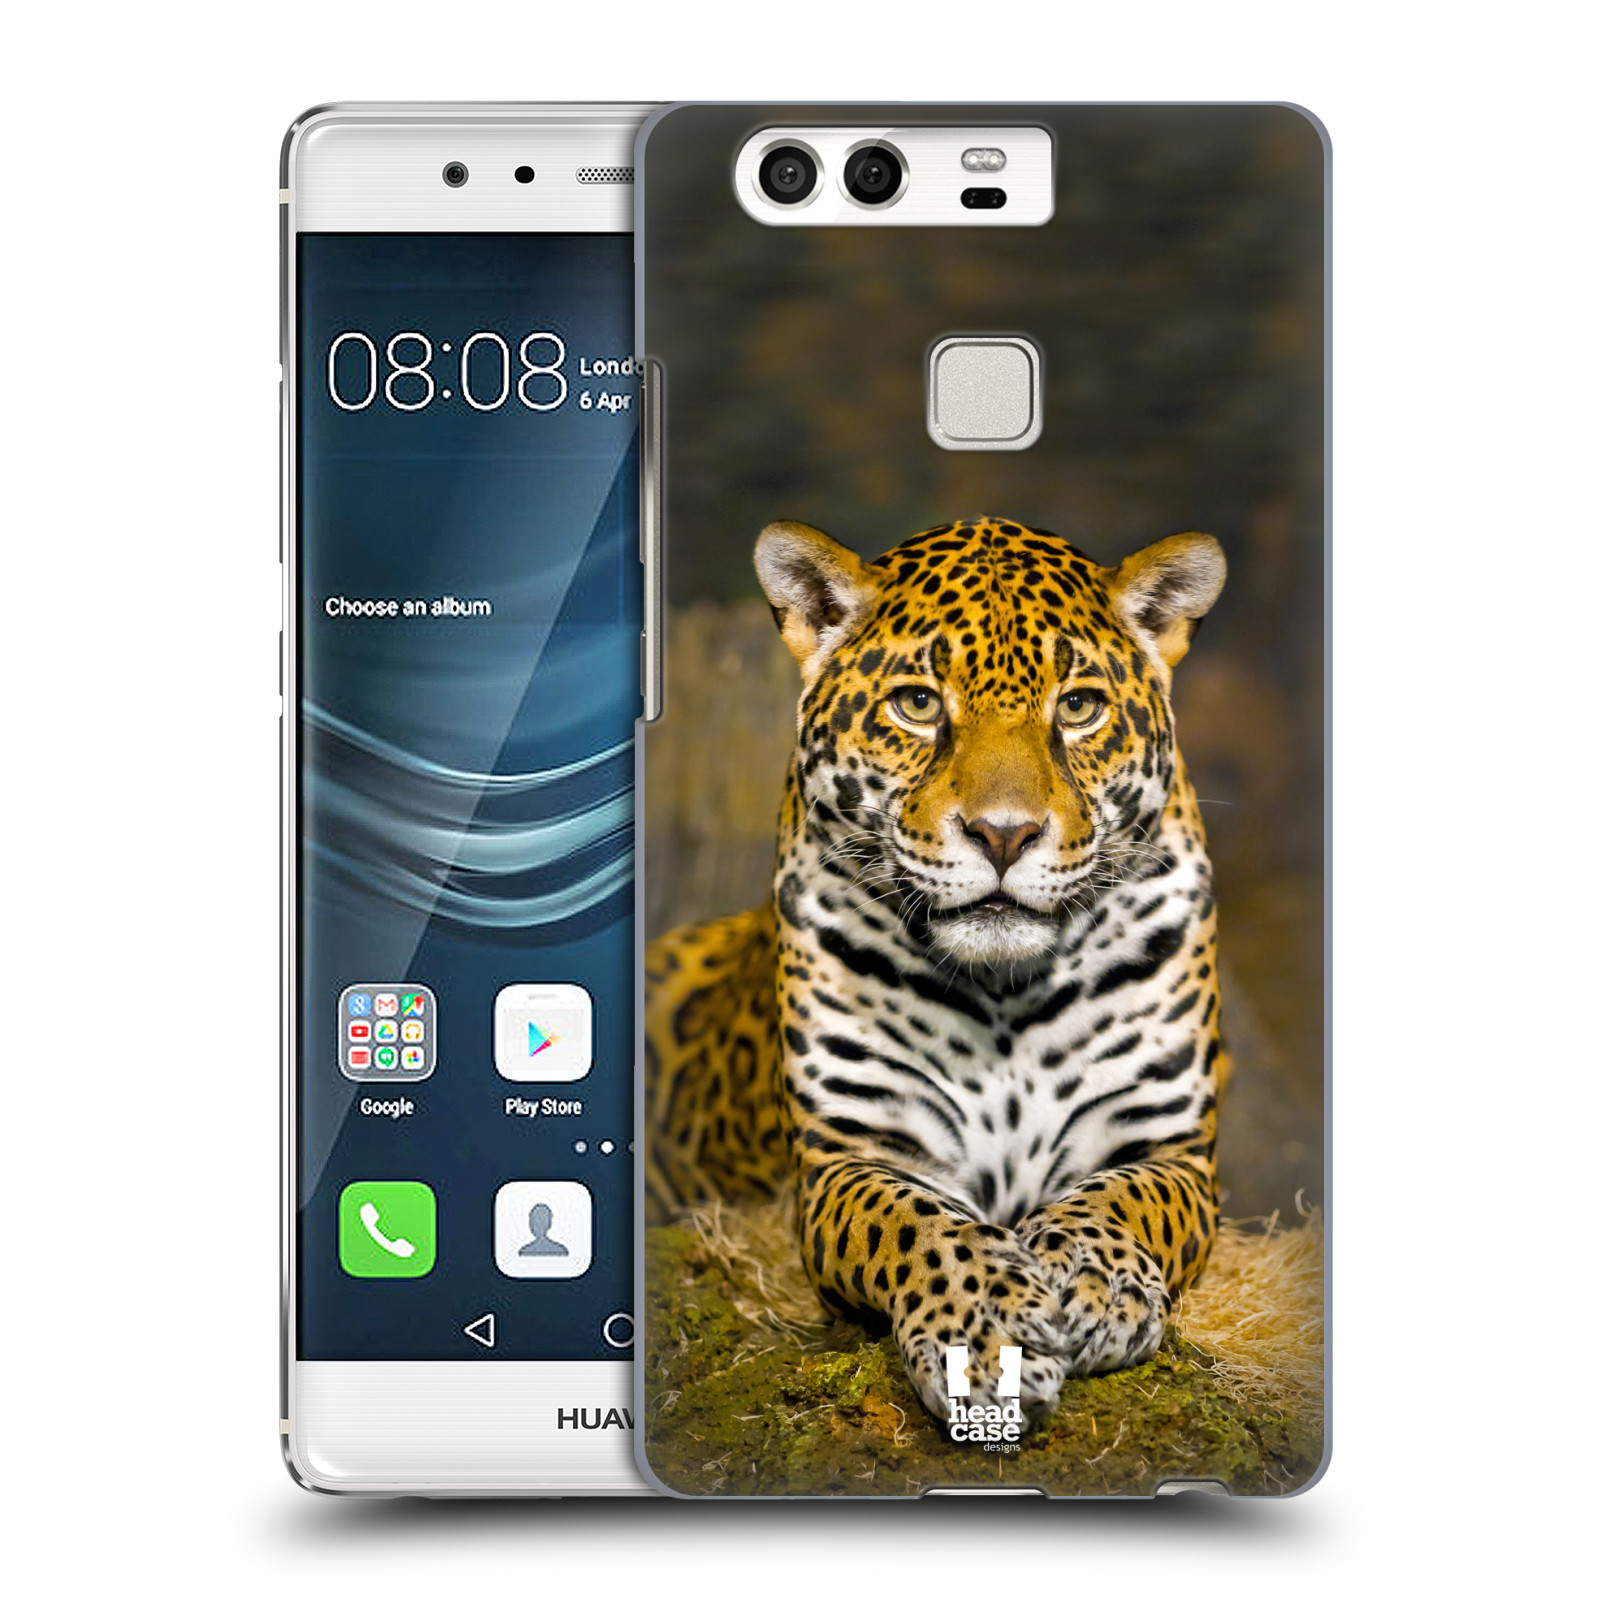 HEAD CASE plastový obal na mobil Huawei P9 / P9 DUAL SIM vzor slavná zvířata foto jaguár